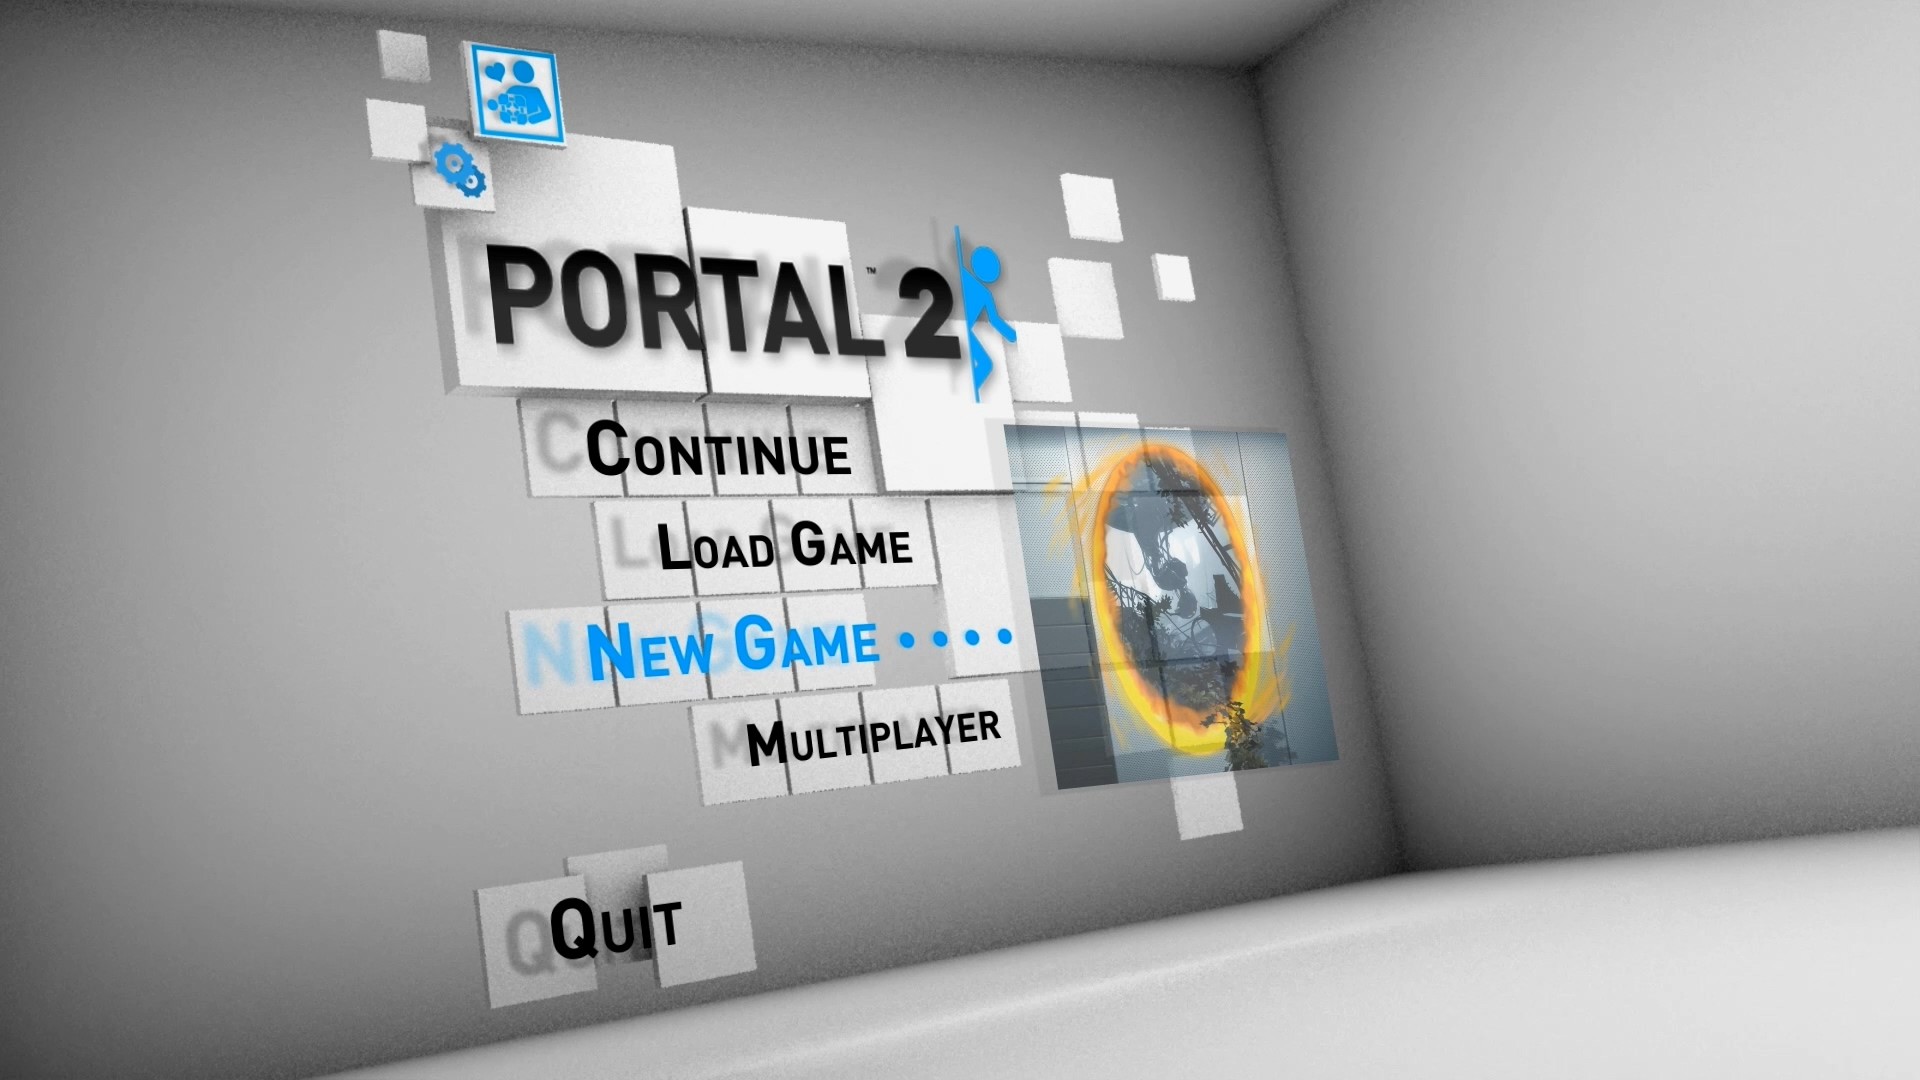 True портал. Портал 2 меню. Portal 2 главное меню. Меню игры портал 2. Главное меню игры с порталом.